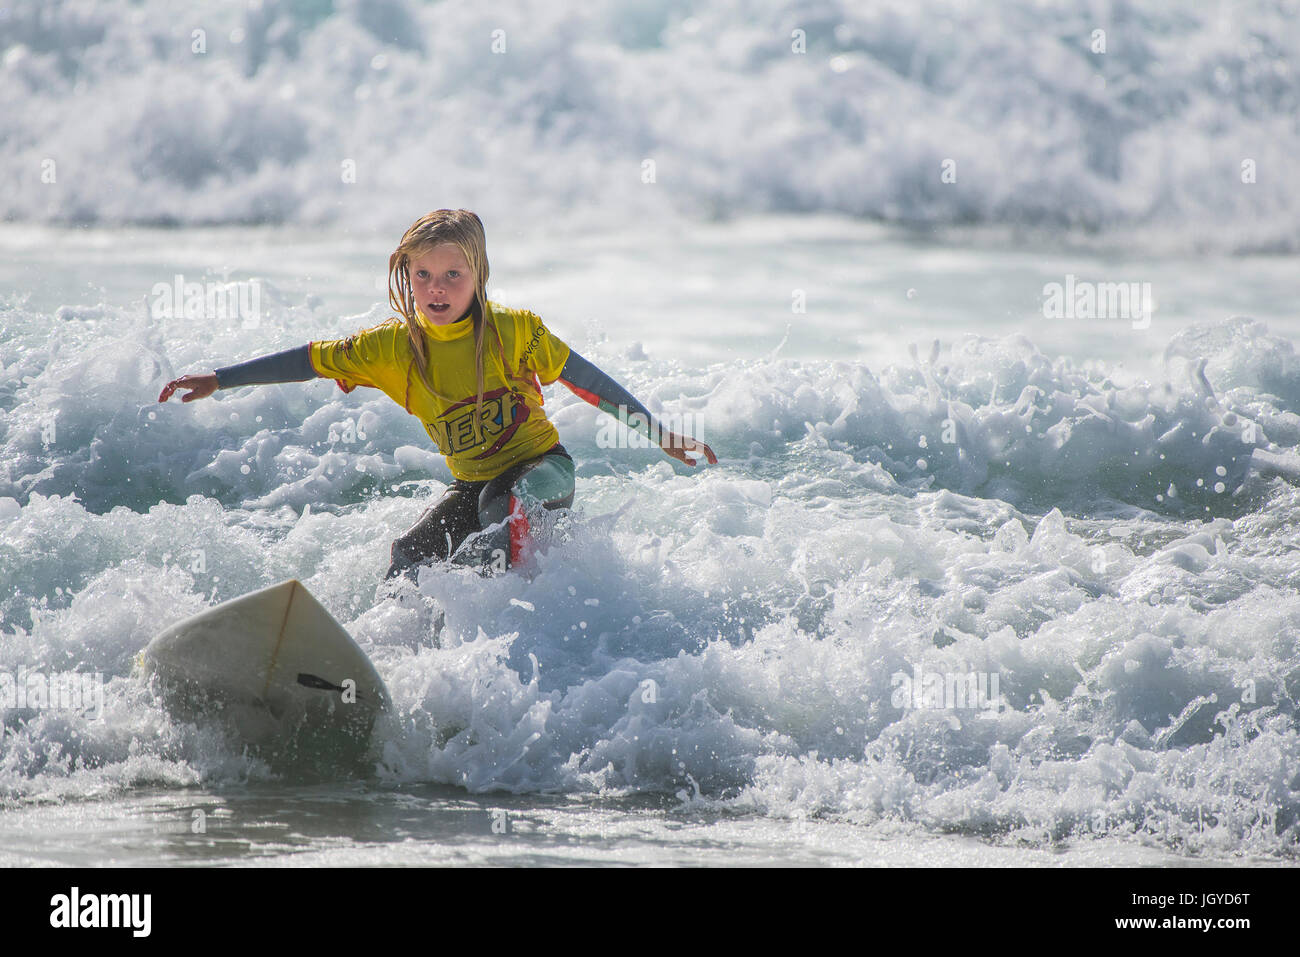 Surfen GROSSBRITANNIEN. Surfen kind Wave. Ein acht Jahre alter Surfer in den britischen Schulen Surf Meisterschaft konkurrieren. Stockfoto